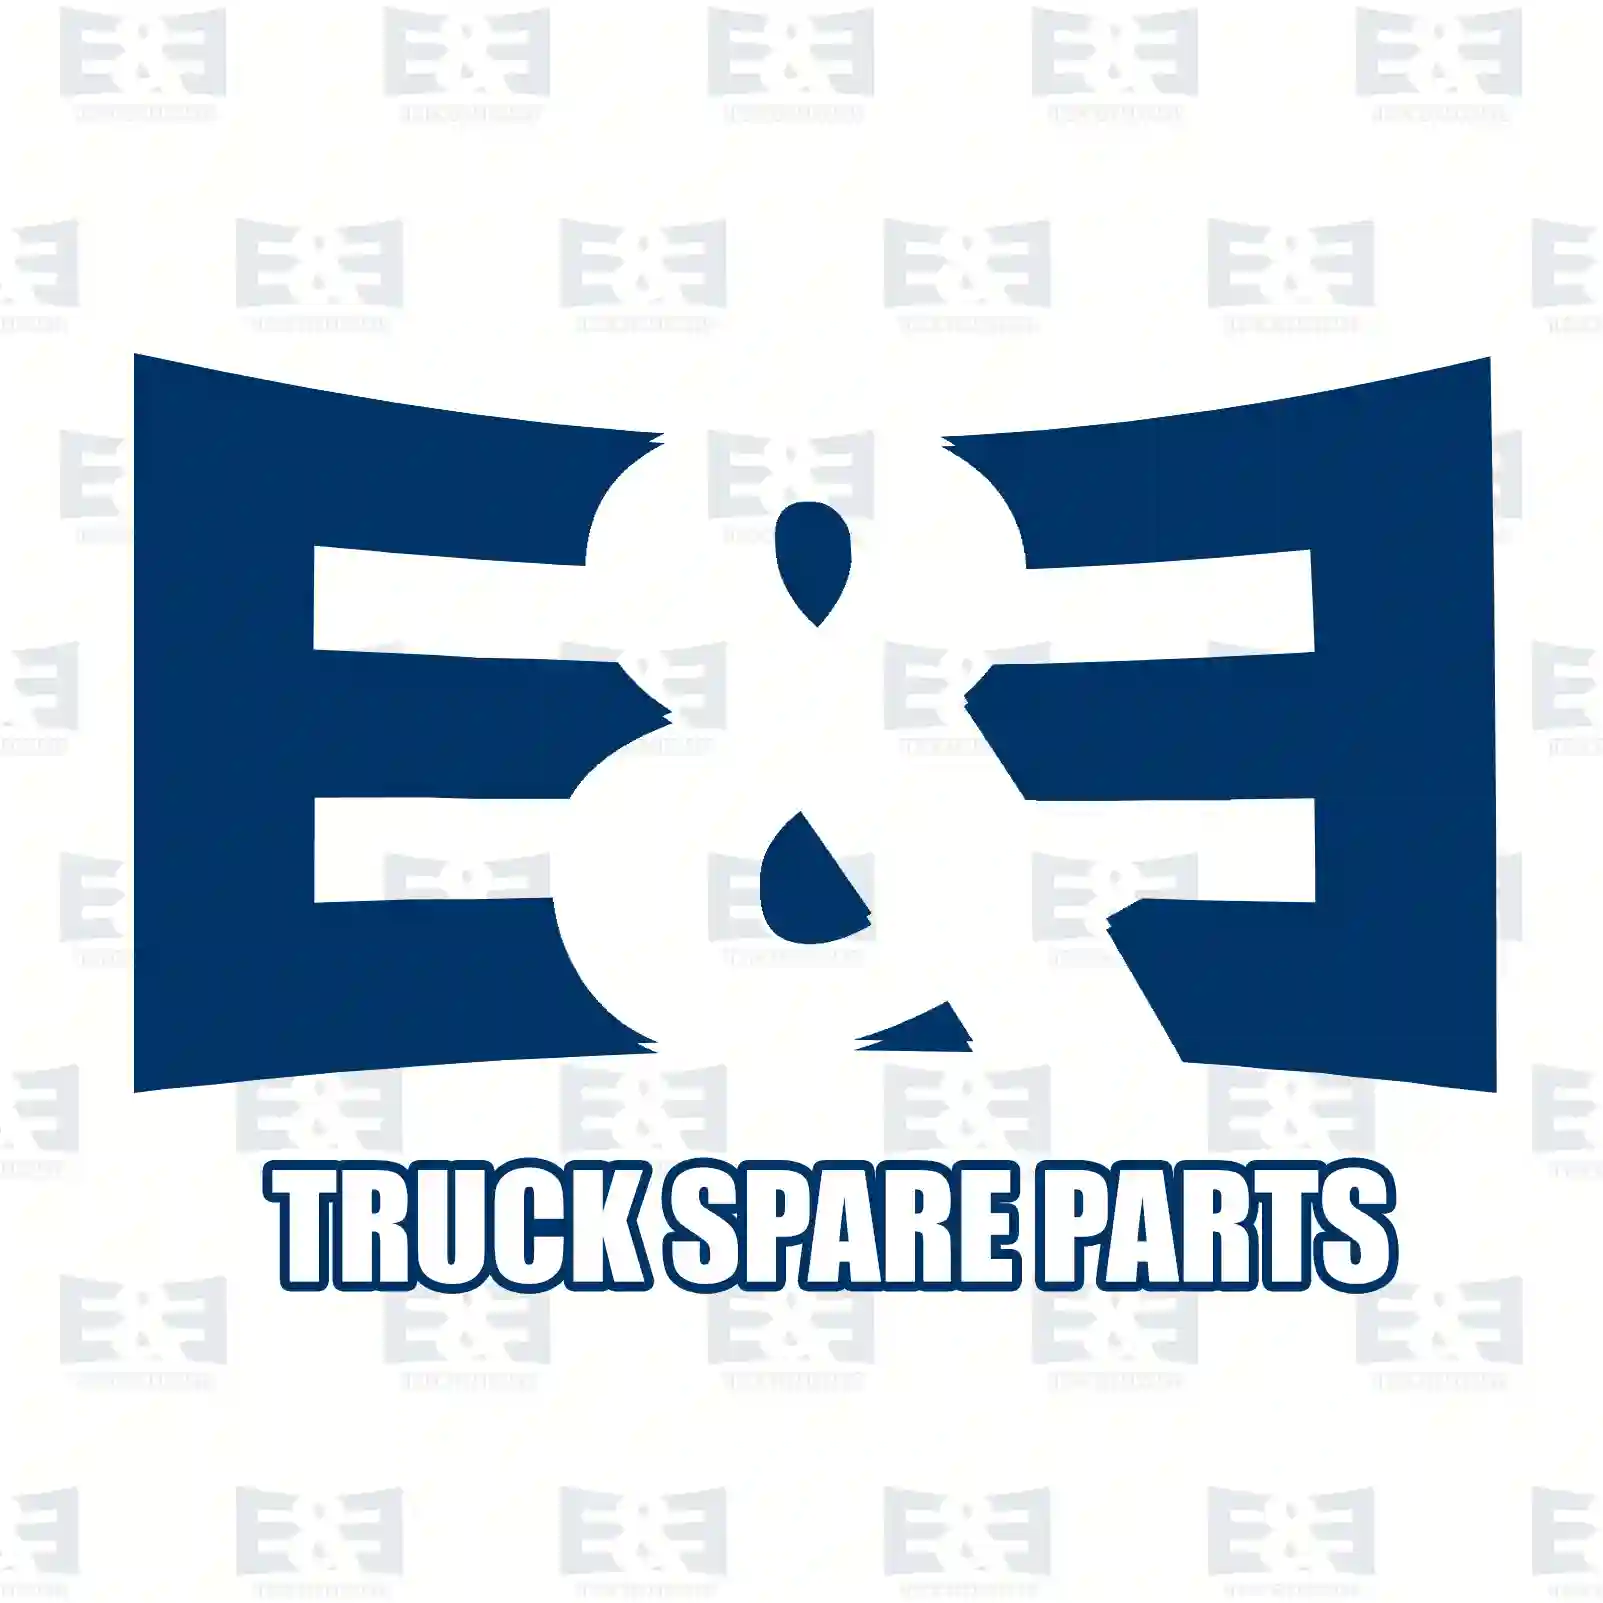 Guide roller, 2E2202569, 9110632, 4402632, 7700116054 ||  2E2202569 E&E Truck Spare Parts | Truck Spare Parts, Auotomotive Spare Parts Guide roller, 2E2202569, 9110632, 4402632, 7700116054 ||  2E2202569 E&E Truck Spare Parts | Truck Spare Parts, Auotomotive Spare Parts